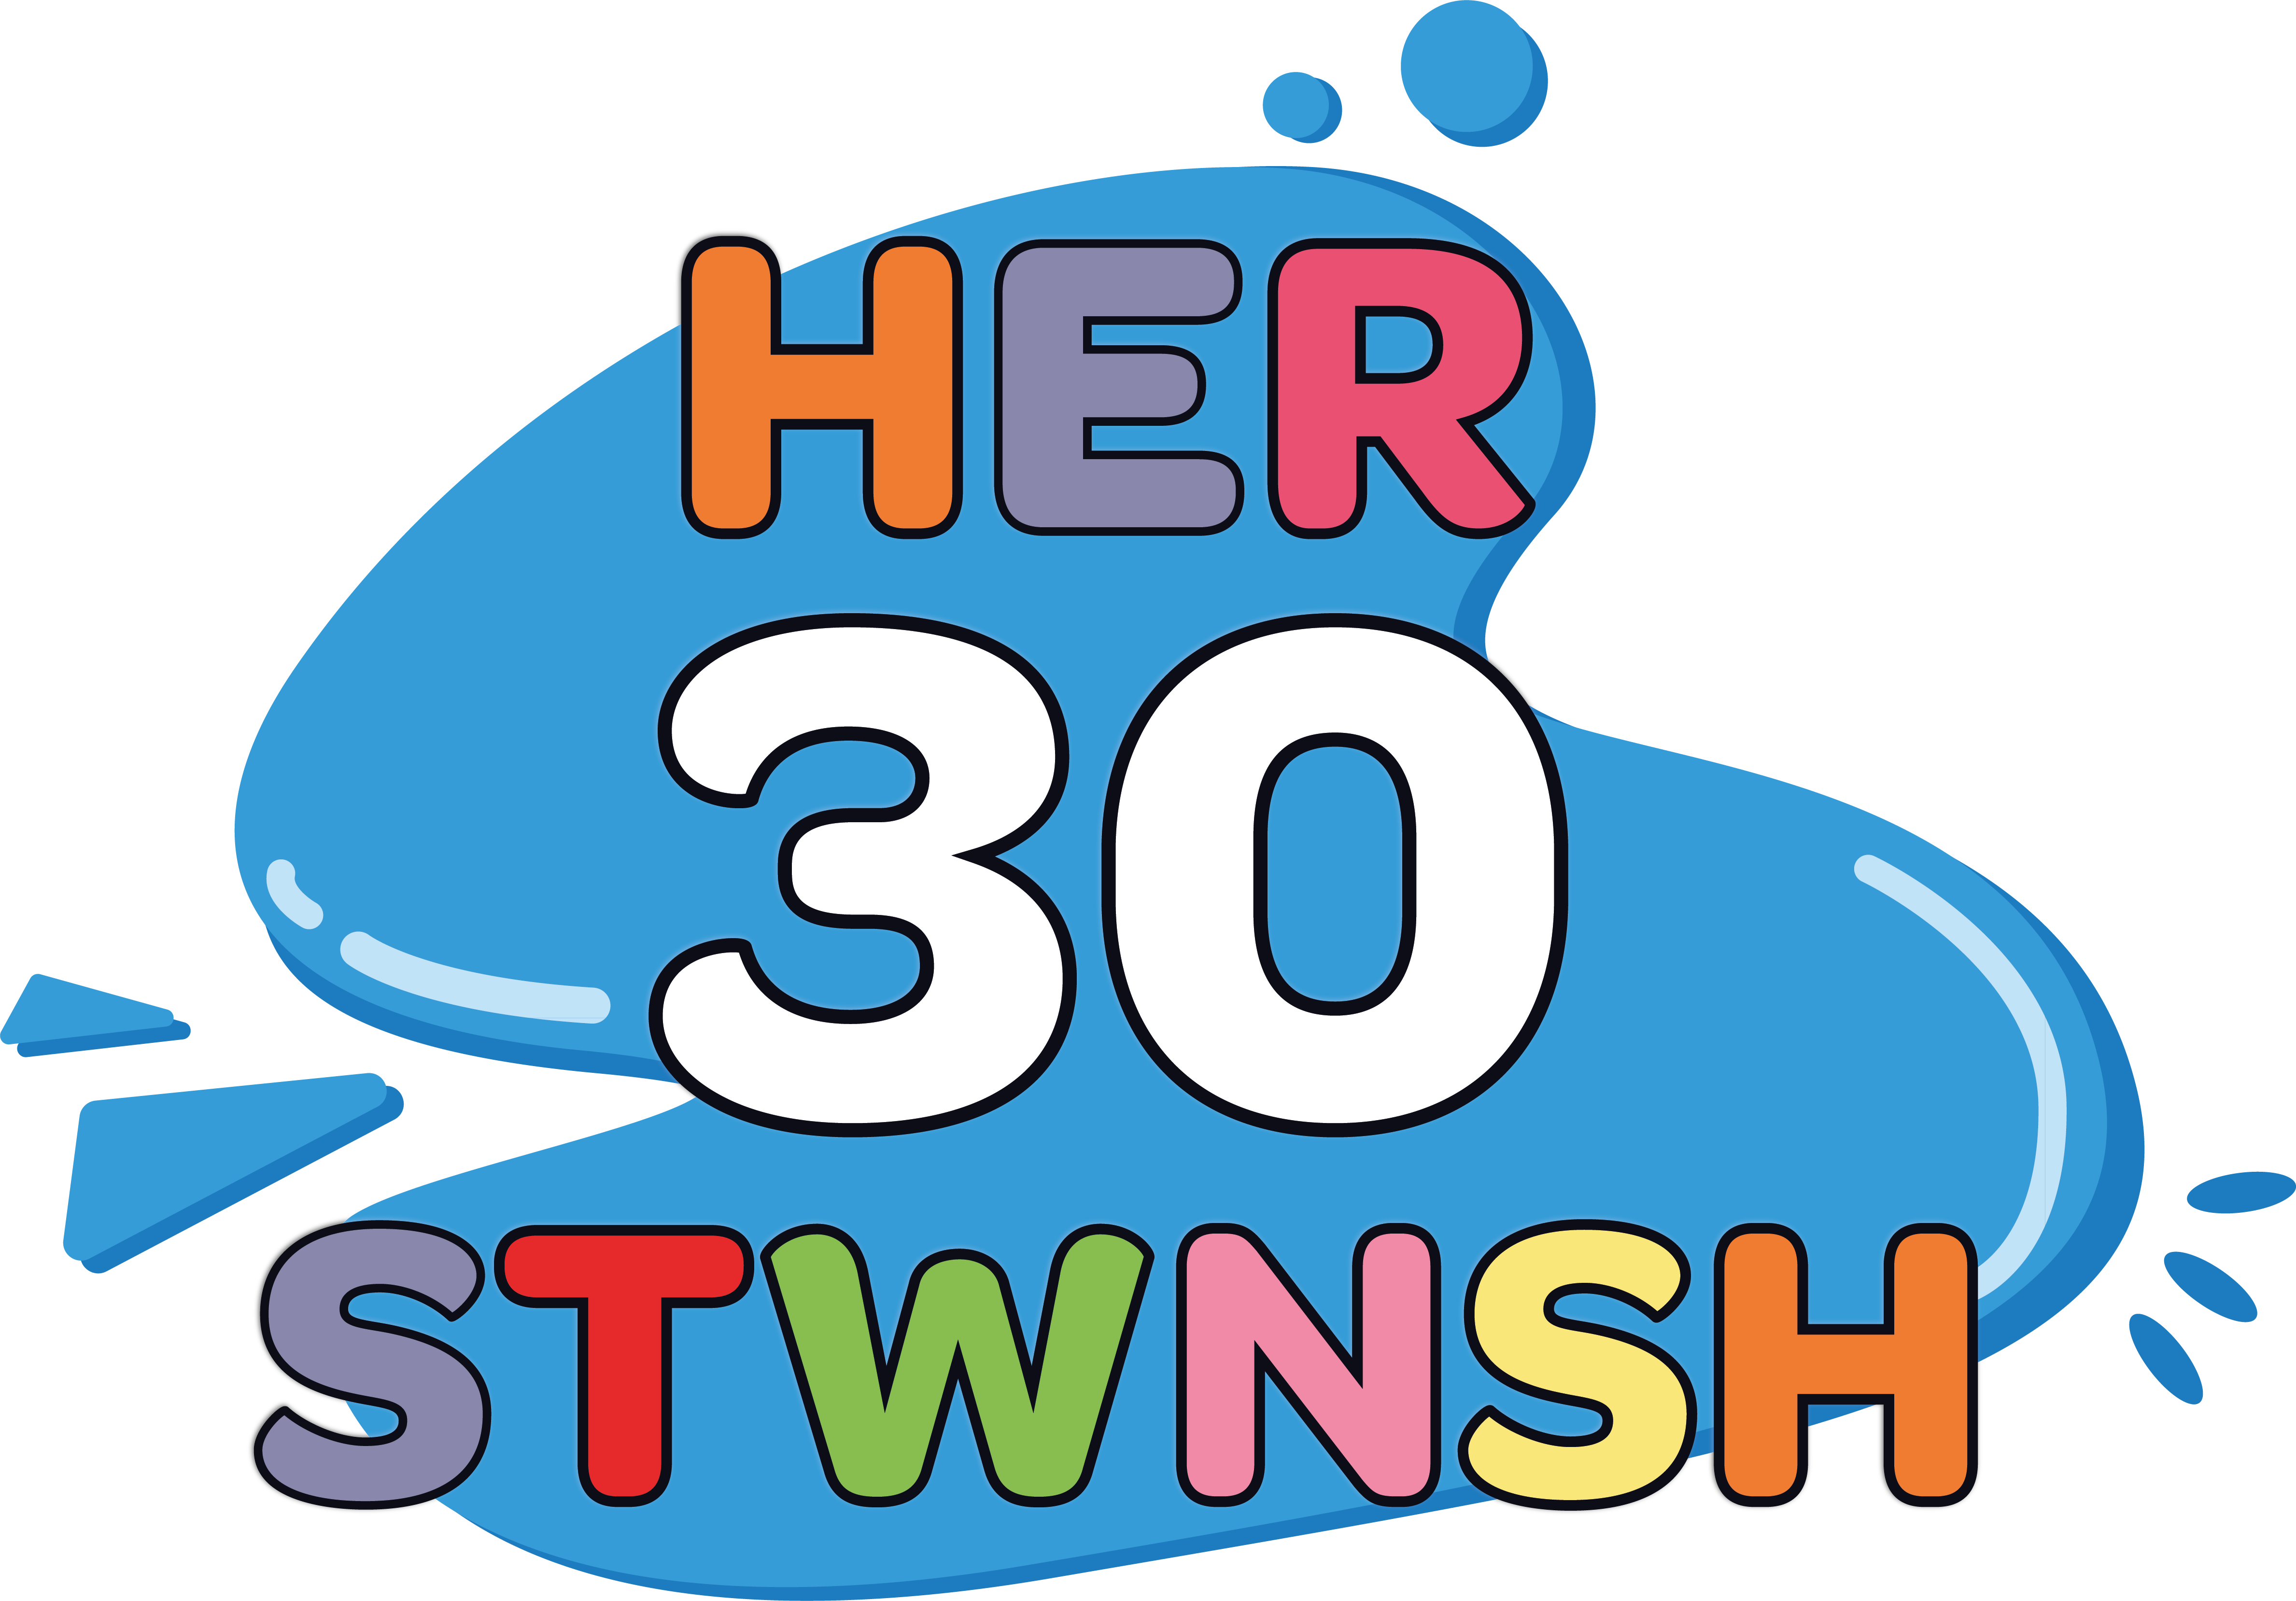 Her 30 Stwnsh